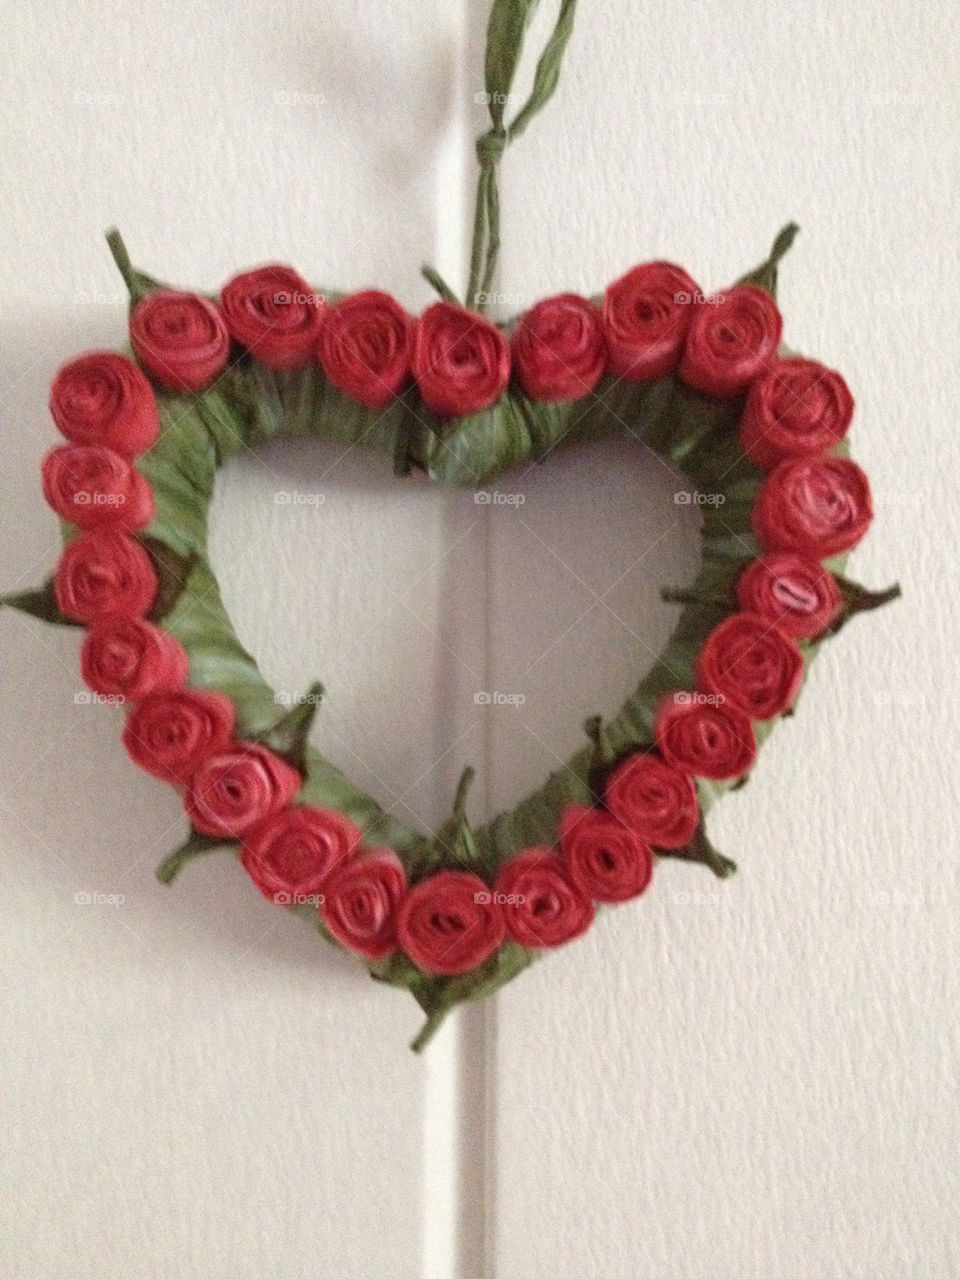 flowers hjärta love roses by mellis67